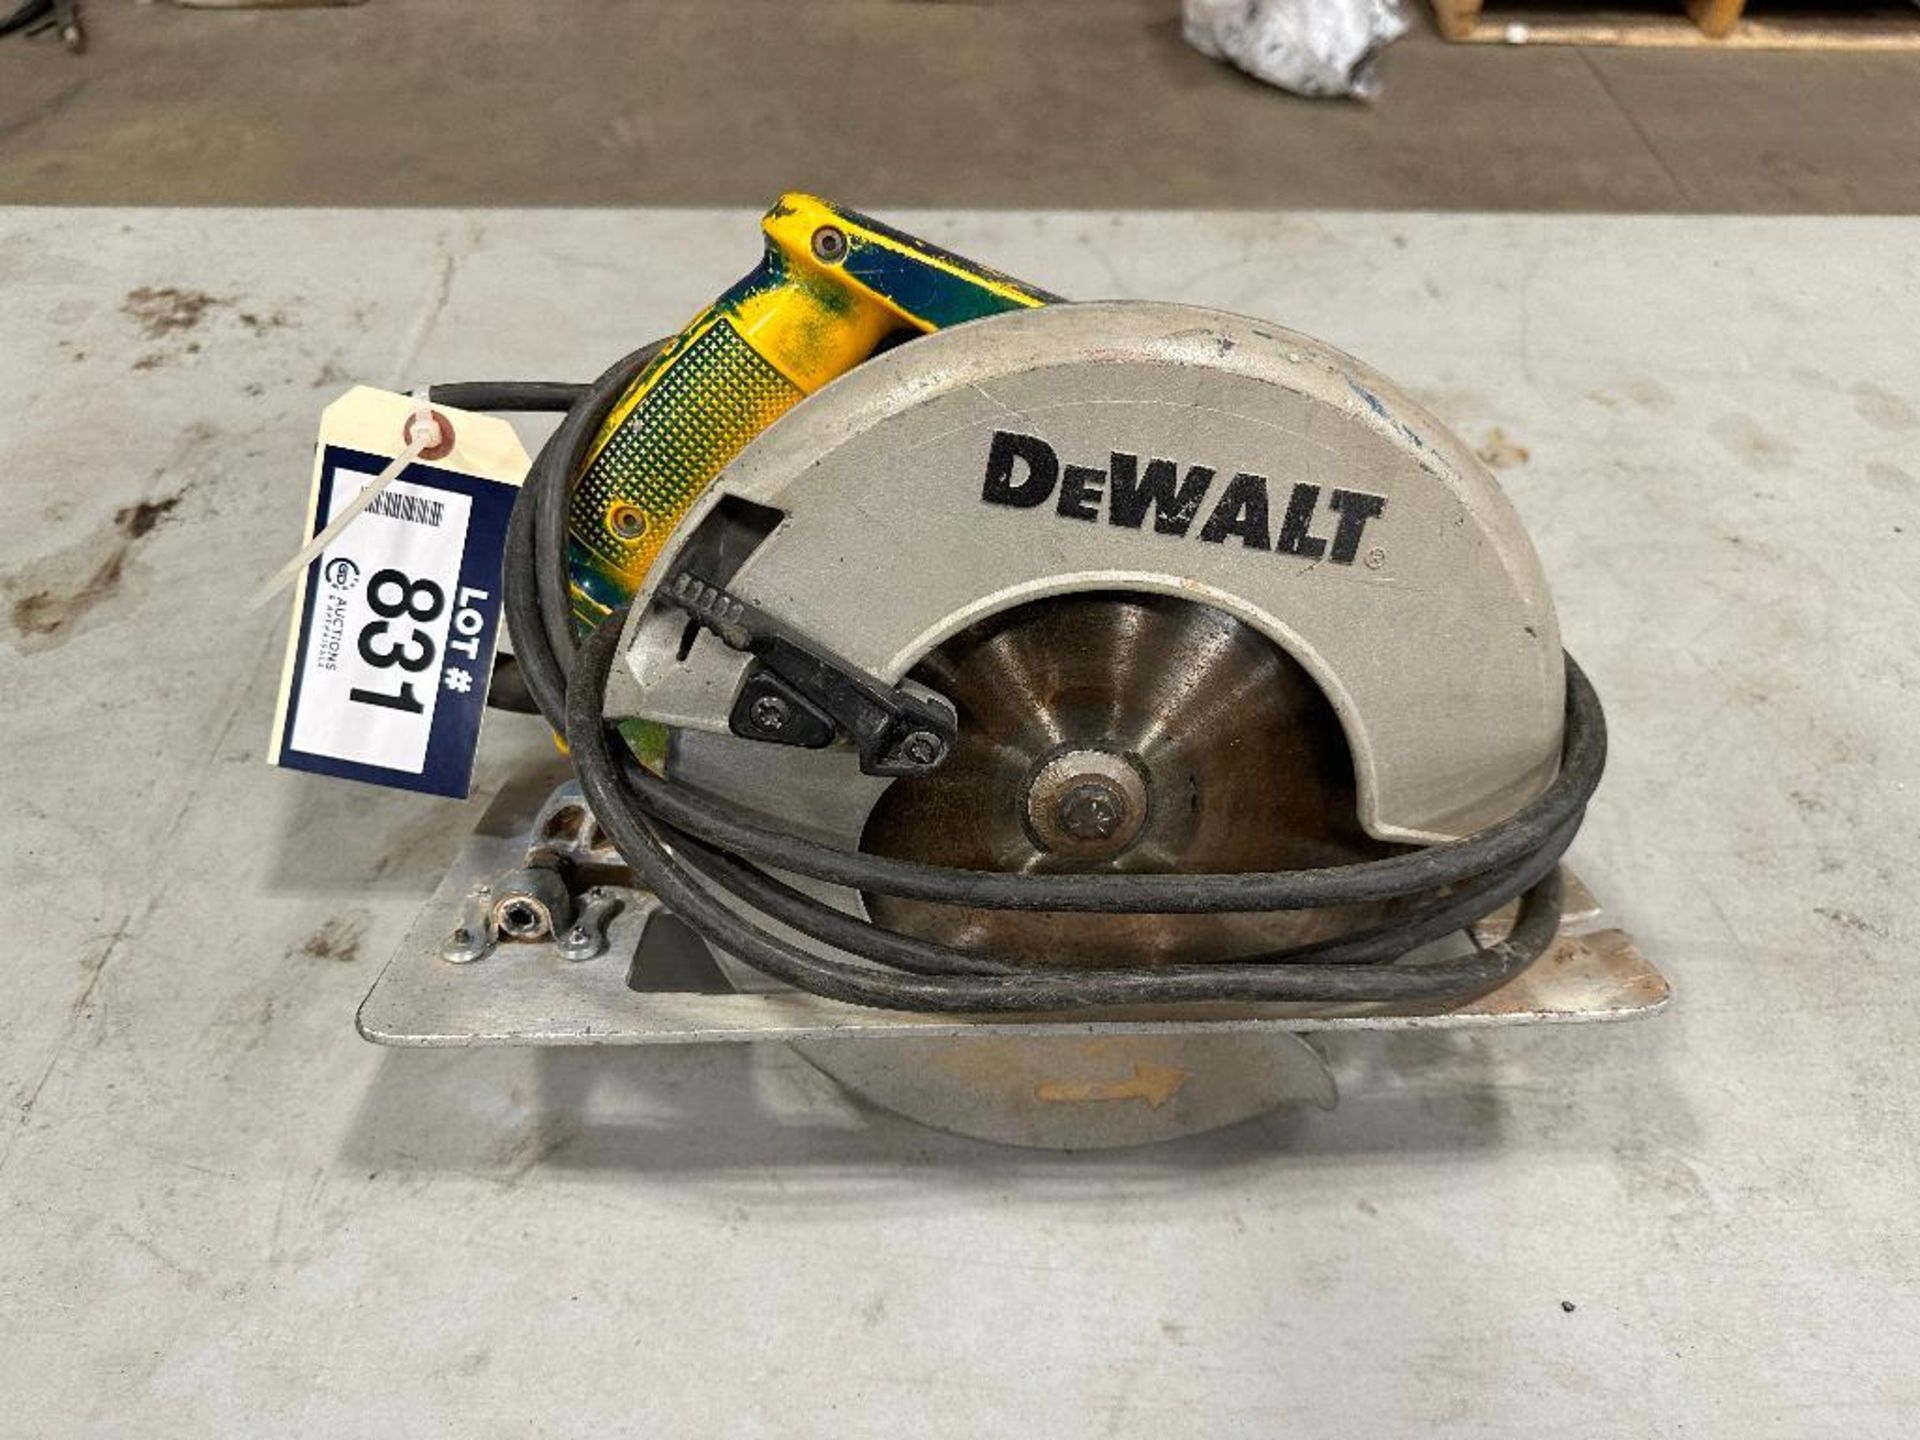 DeWalt DW384 8-1/4" Circular Saw